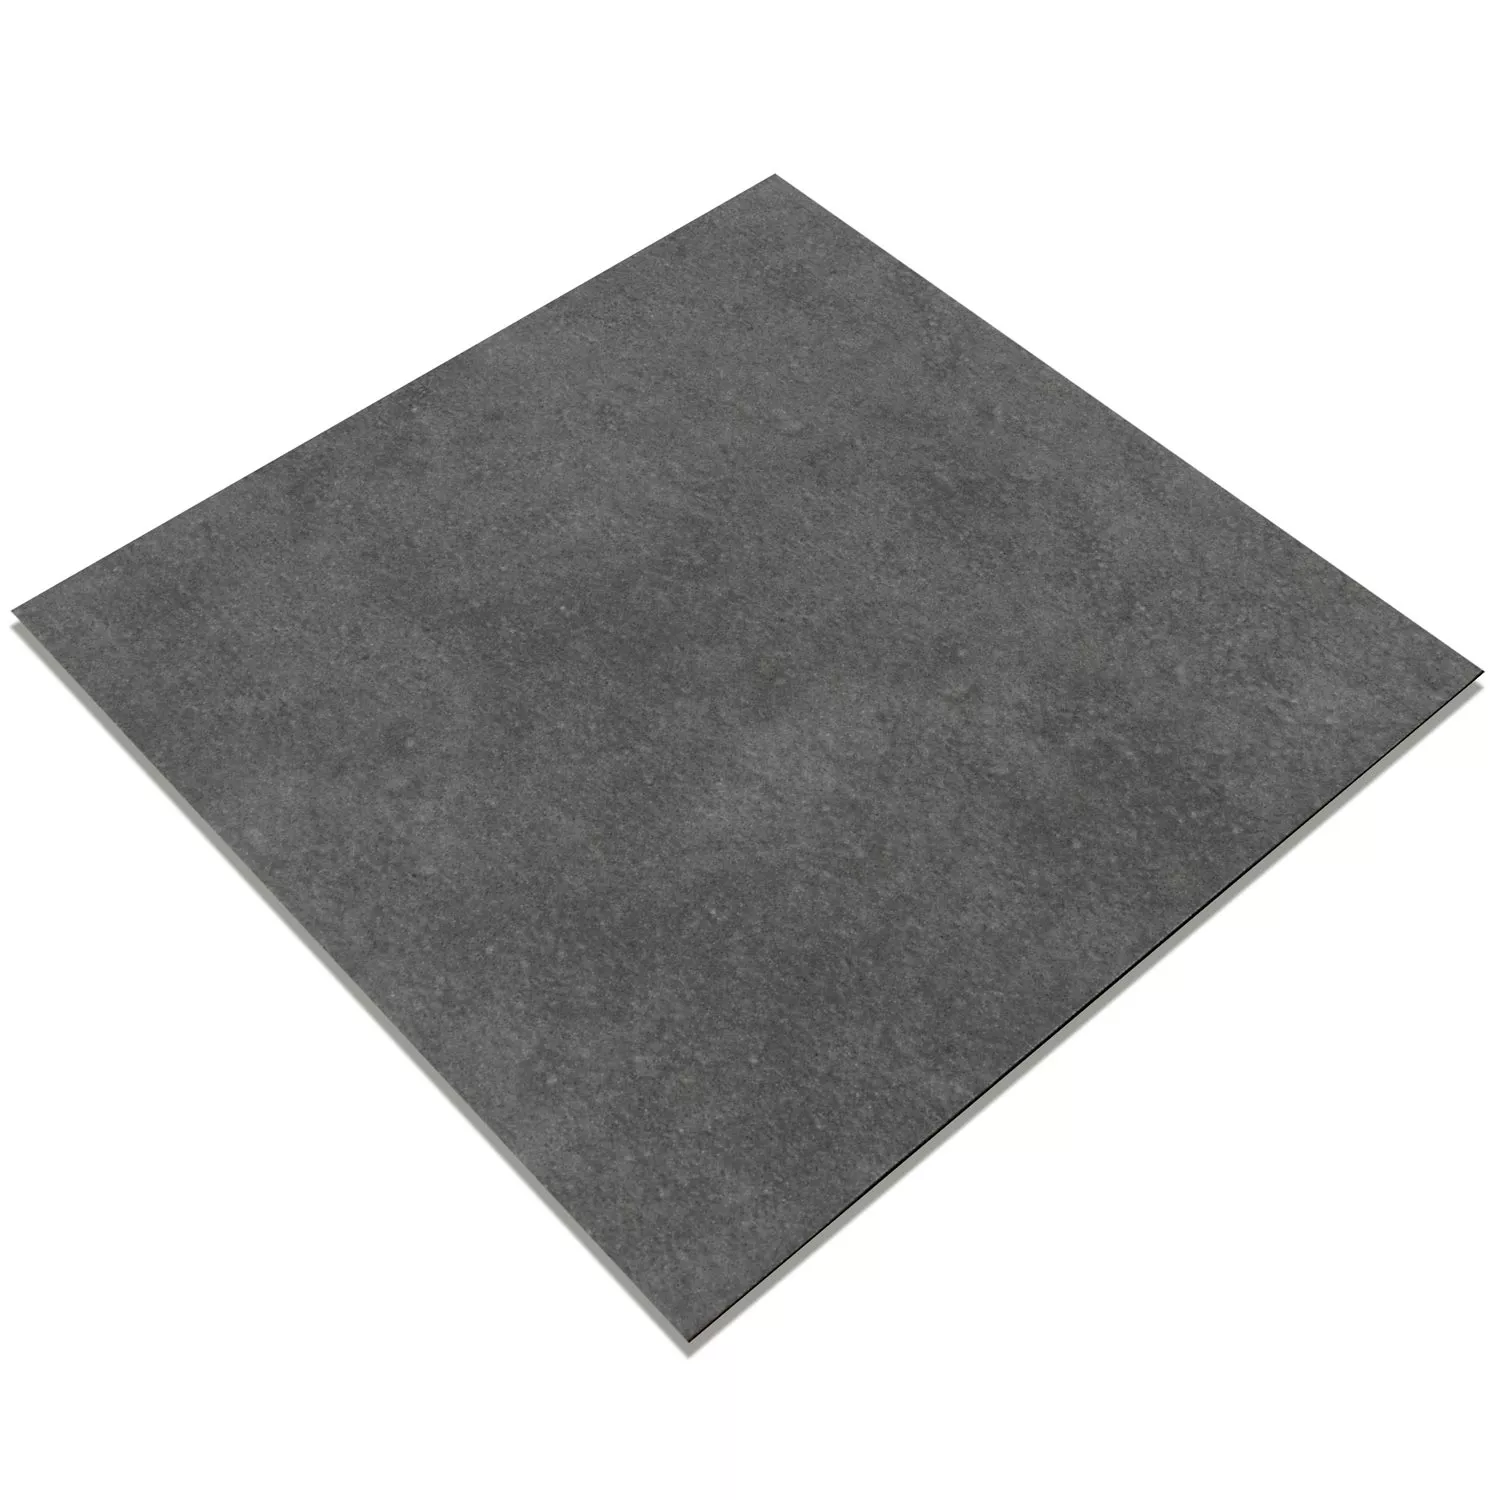 Pločice Imitacija Cementa Gotik Osnovna Pločica Tamnosiva 22,3x22,3cm